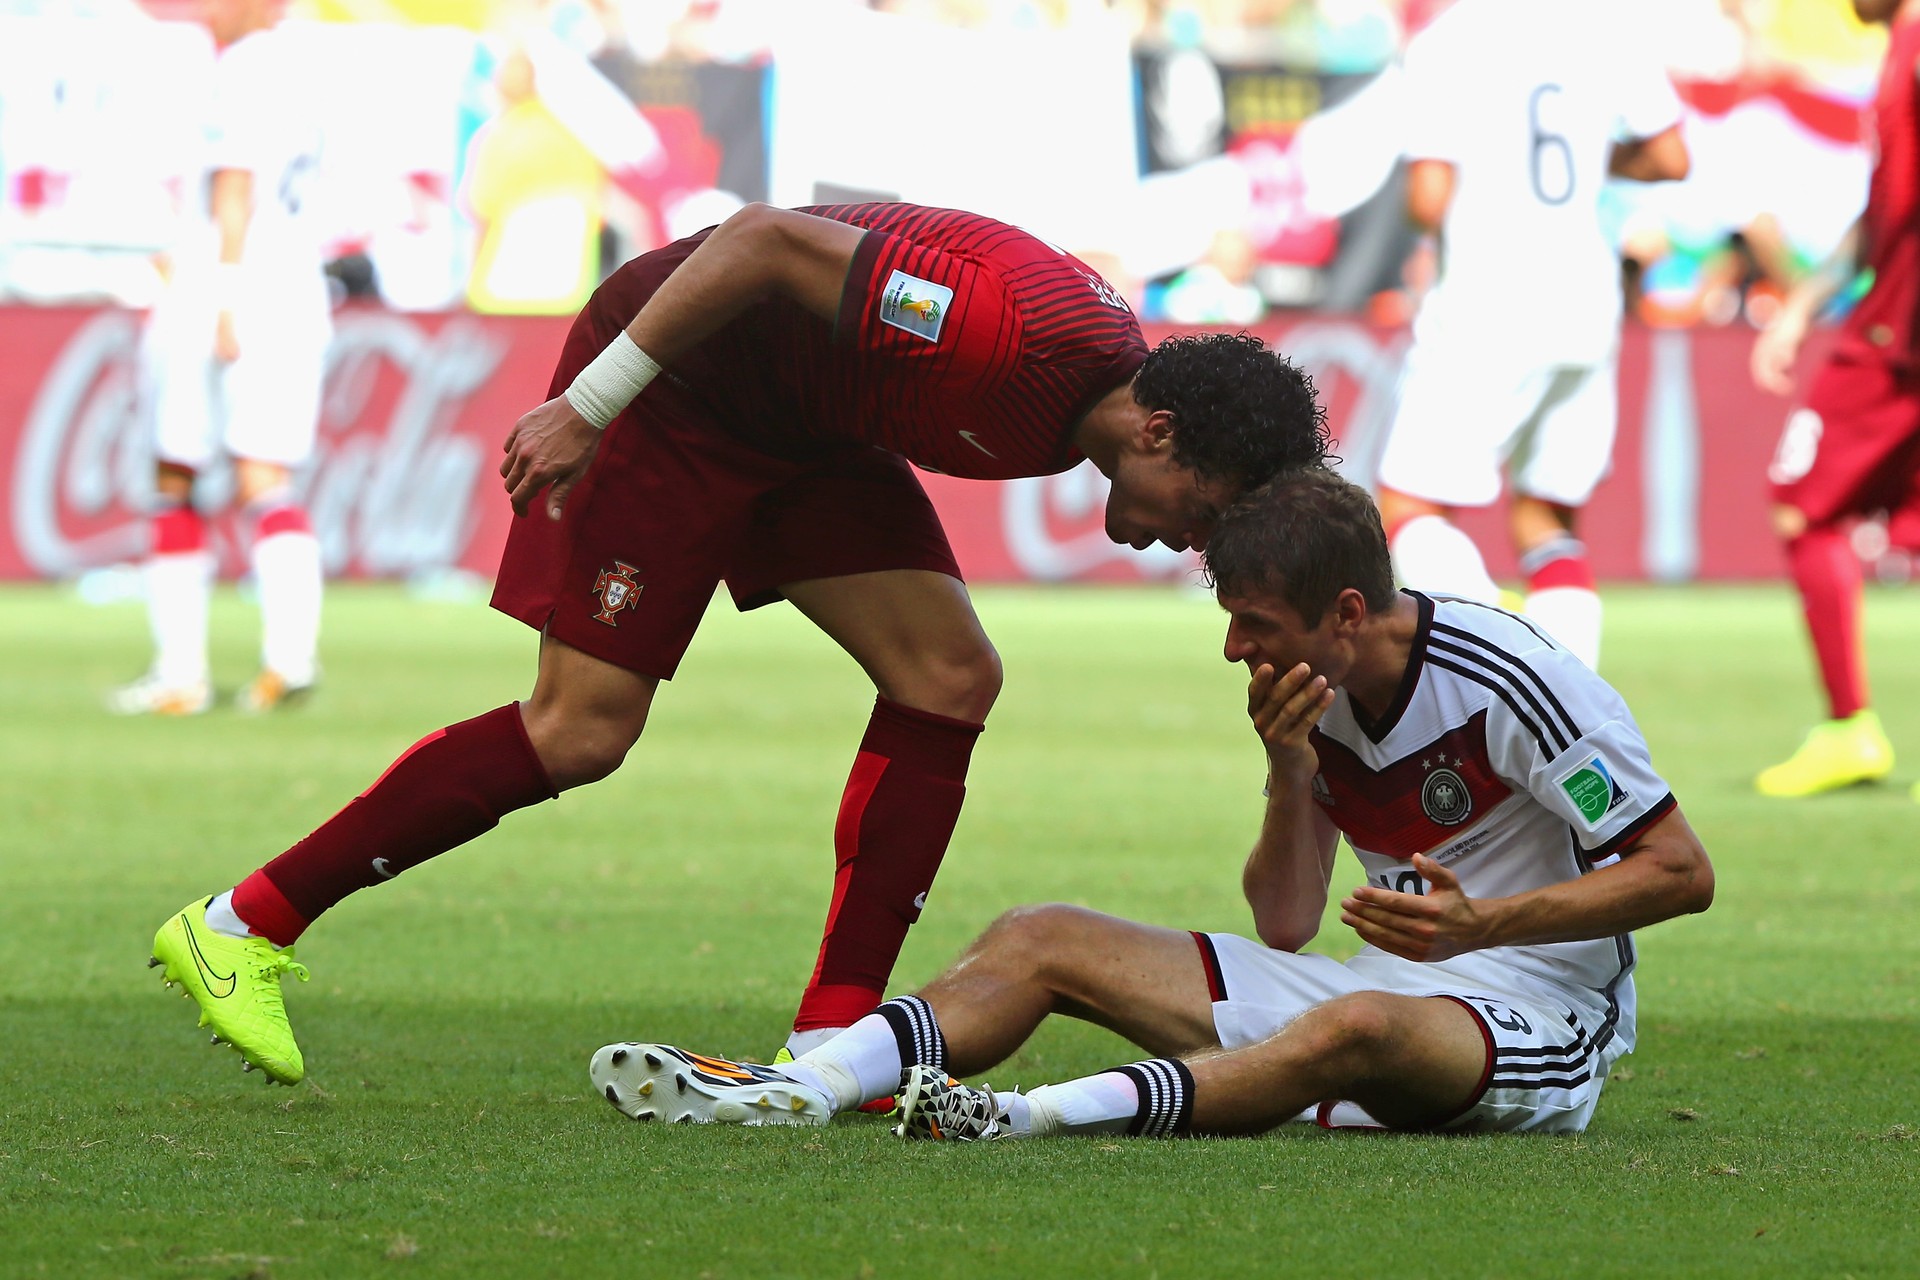 Pepe intimida o adversário em campo (Foto: Getty Images)